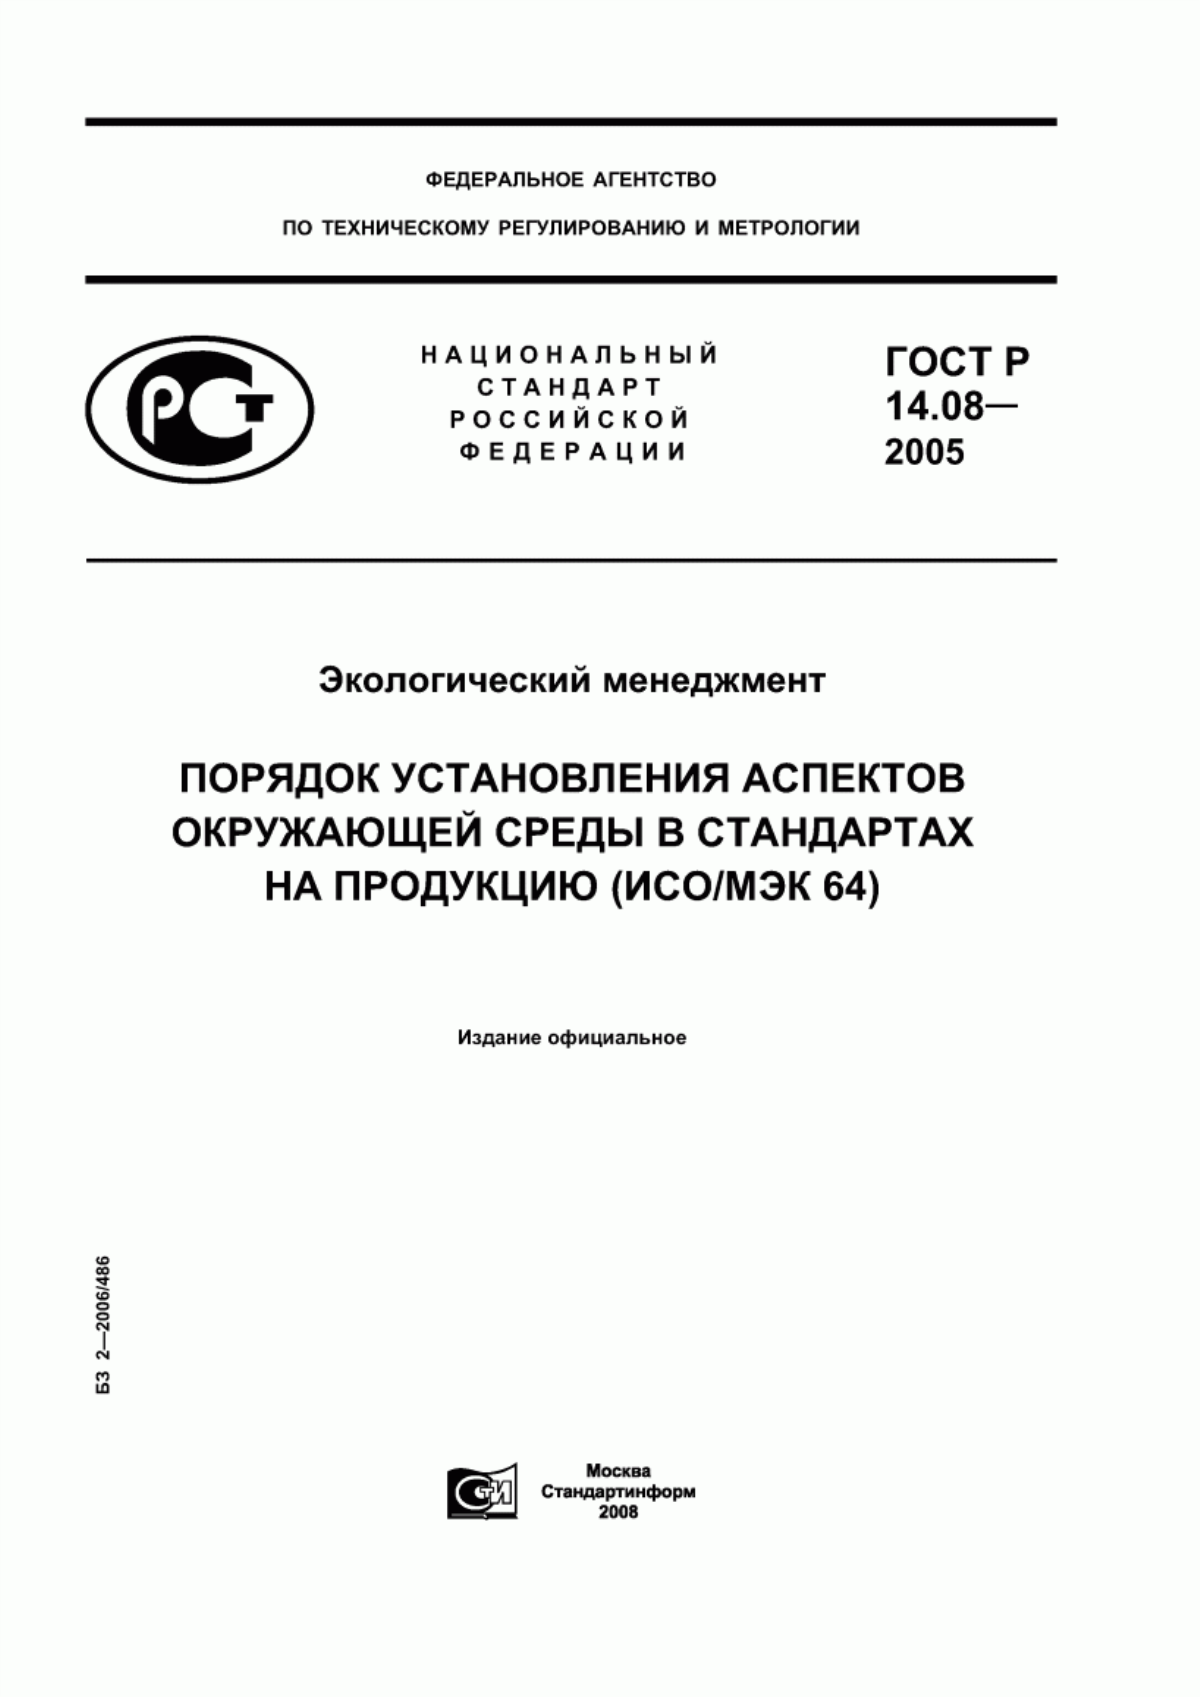 ГОСТ Р 14.08-2005 Экологический менеджмент. Порядок установления аспектов окружающей среды в стандартах на продукцию (ИСО/МЭК 64)